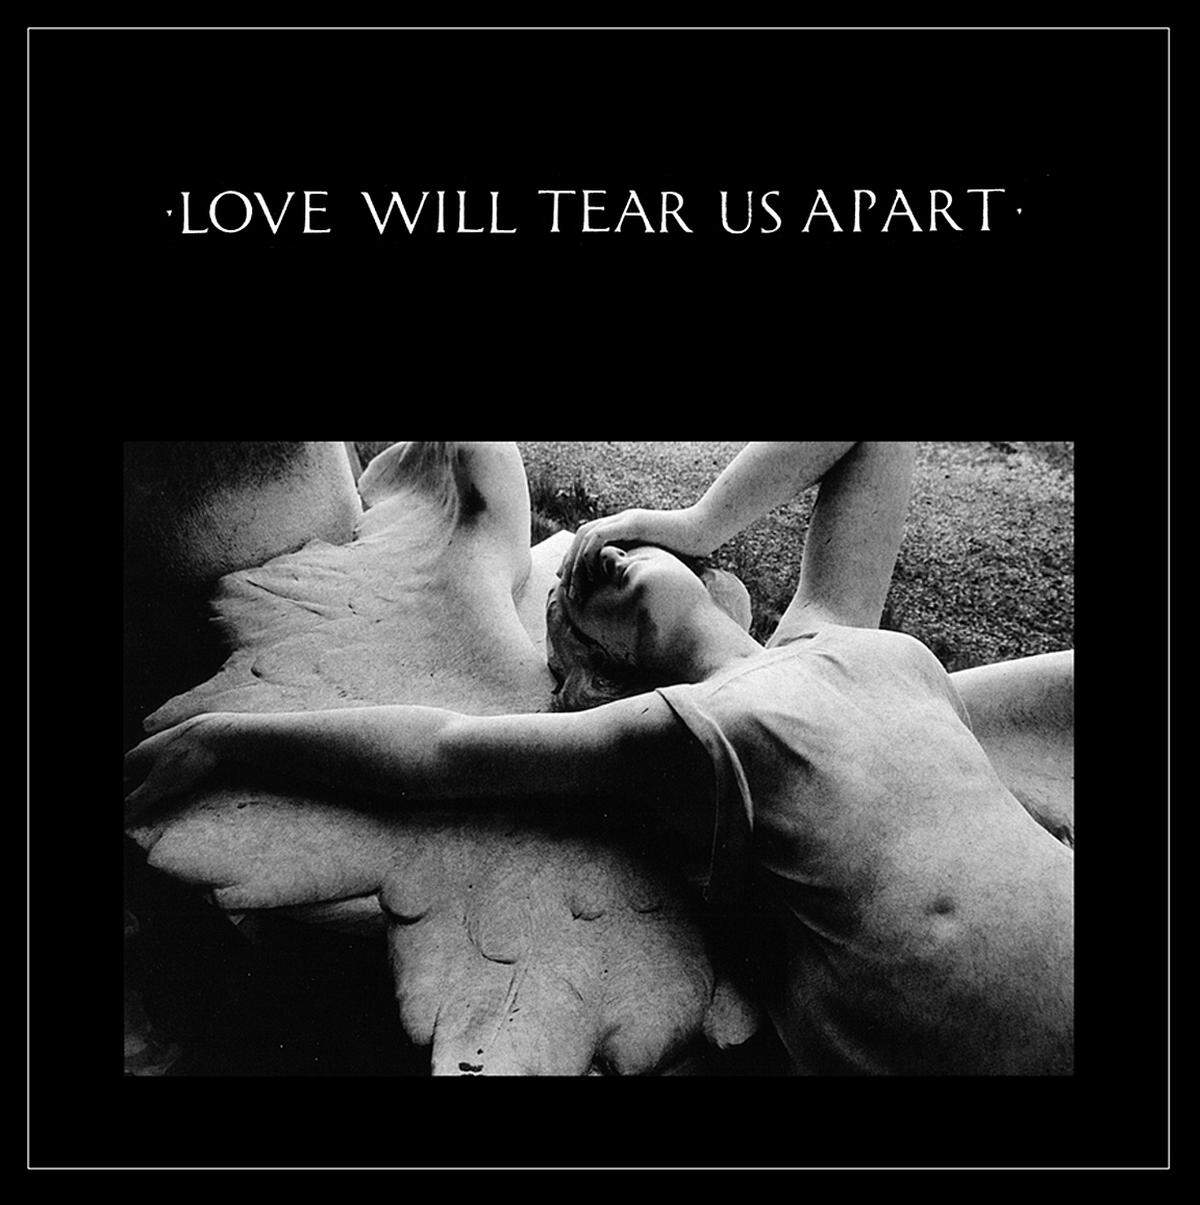 Tragischer geht's kaum: Mit nur 23 Jahren setzte Sänger Ian Curtis seinem Leben ein Ende. Kurz zuvor schrieb er diesen Song über unglücklich Liebende. "Love Will Tear Us Apart" steht auch auf dem Grabstein des Musikers.